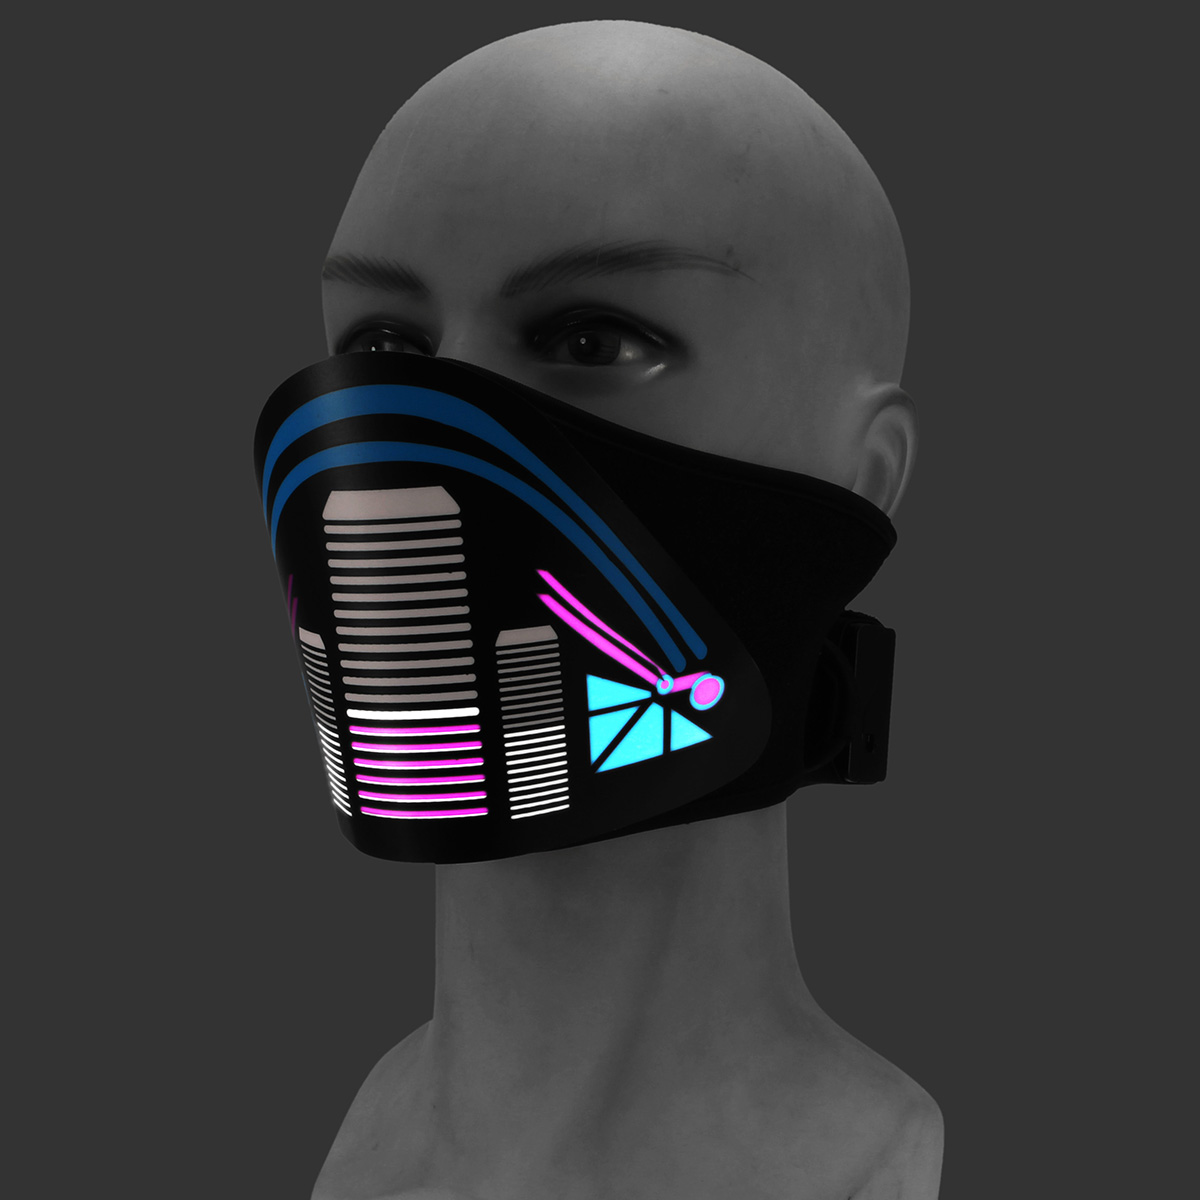 Follow the light маска для лица. МВК маска велосипедная. Электронная маска. Маска с подсветкой. Маска со светодиодами.